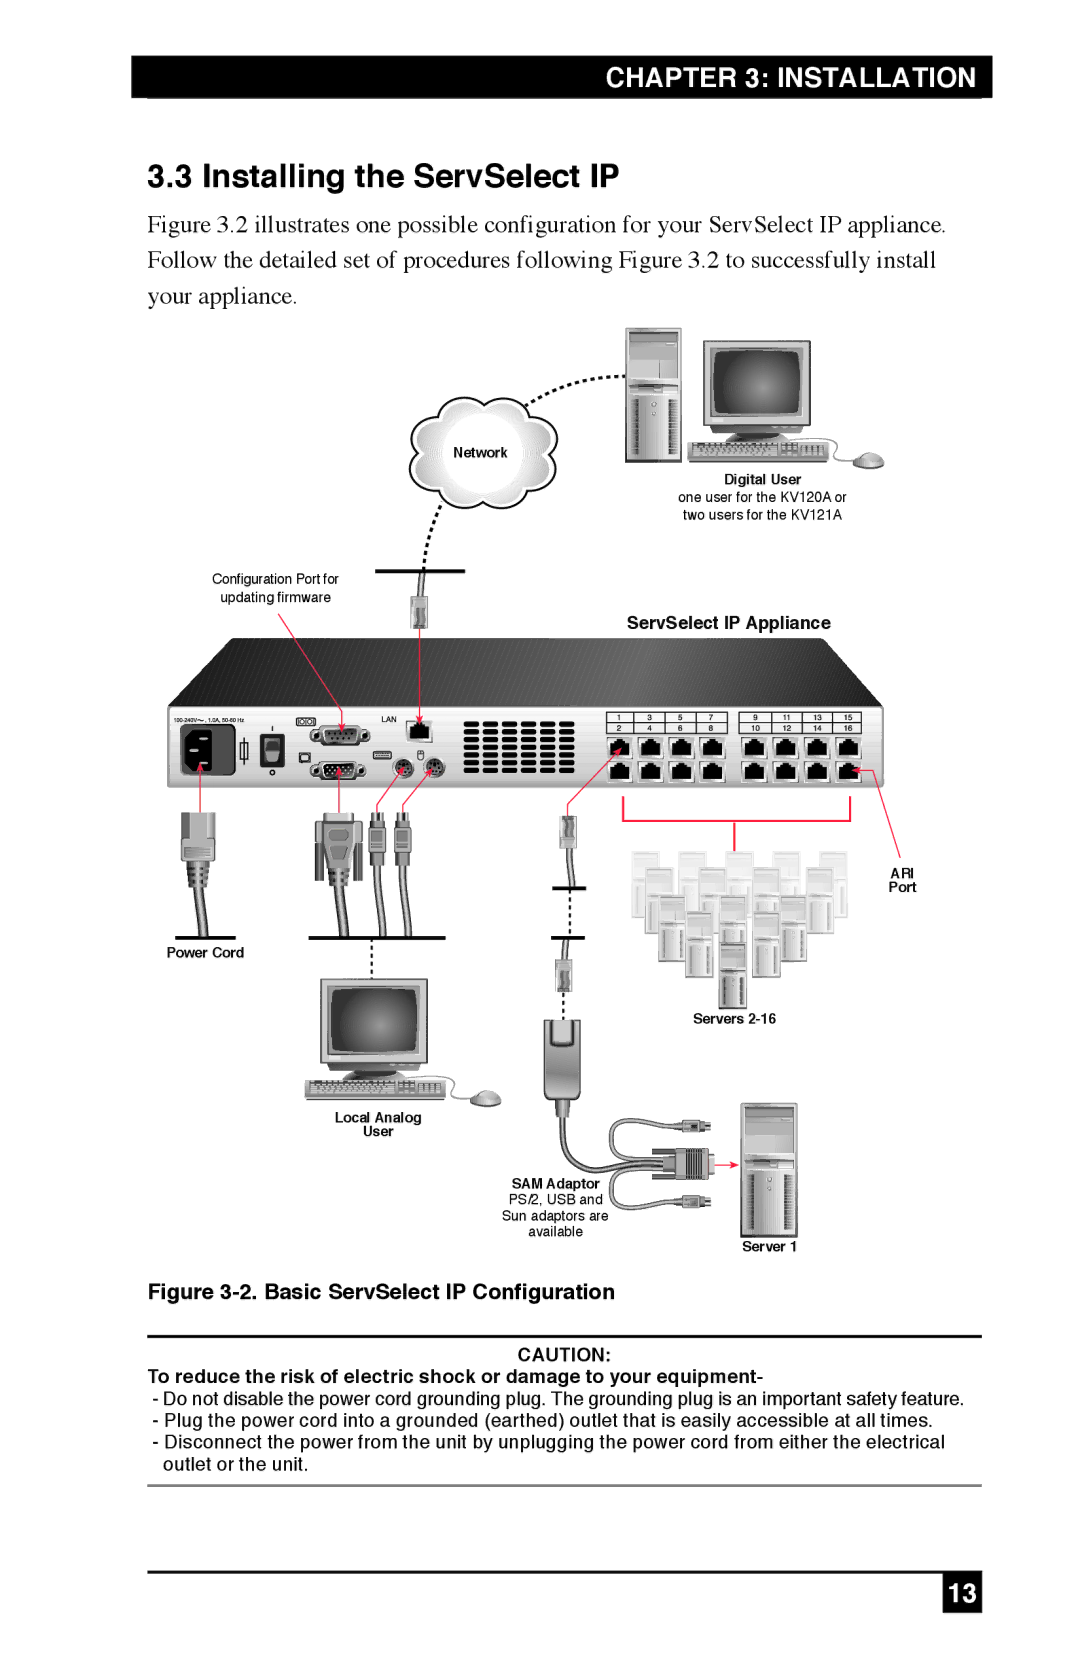 Black Box KV212E, KV120E, KV120A manual Installing the ServSelect IP, Basic ServSelect IP Configuration 